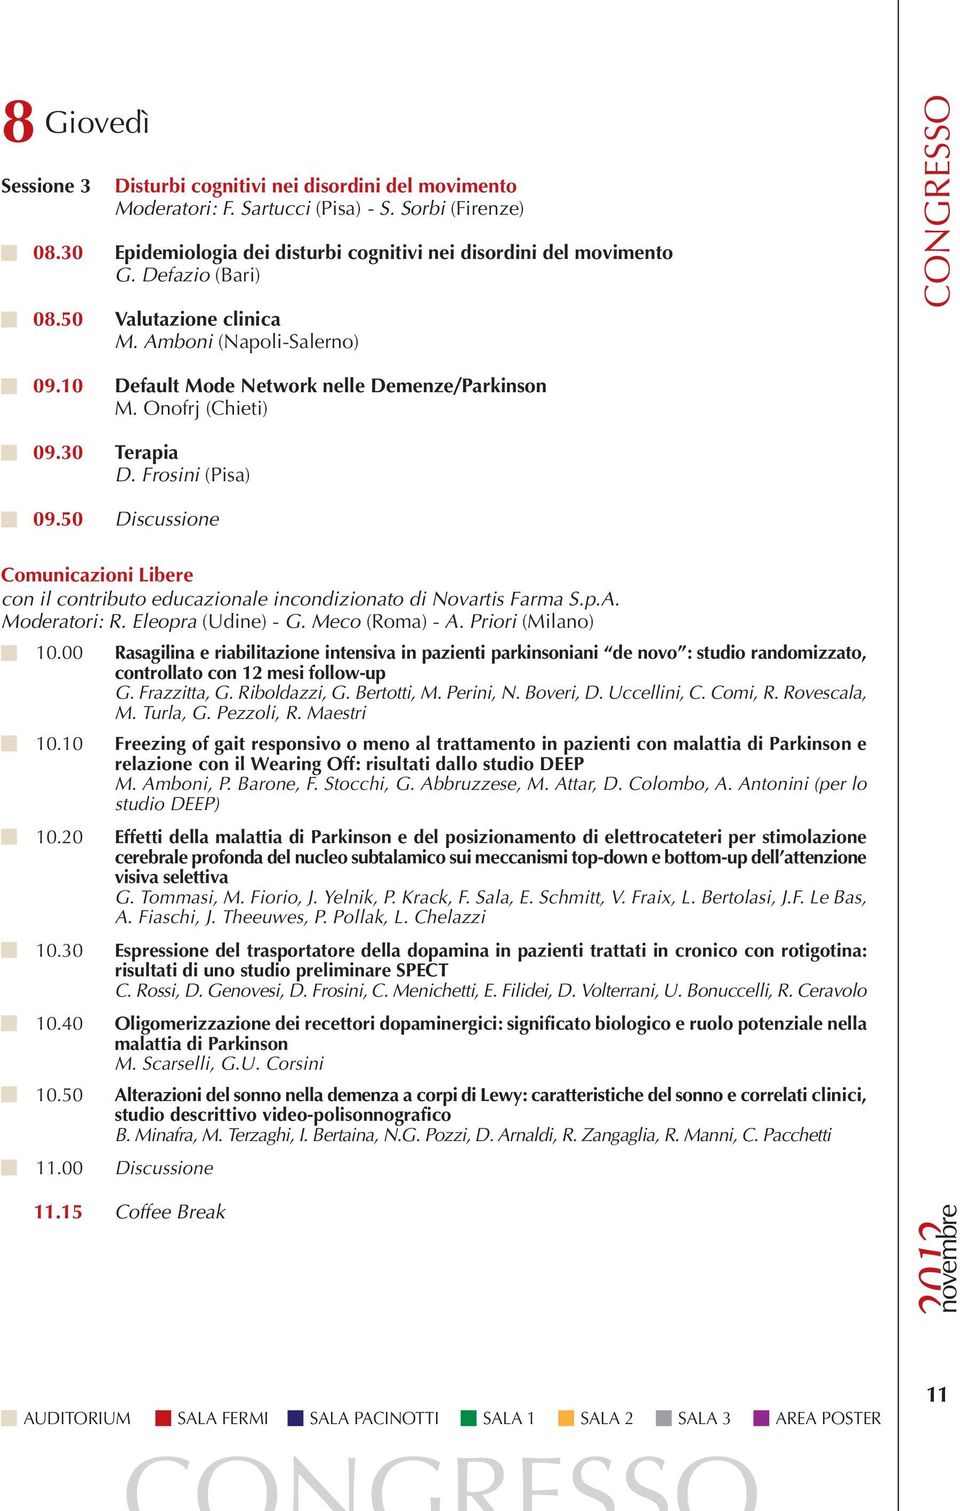 50 Discussione Comunicazioni Libere con il contributo educazionale incondizionato di Novartis Farma S.p.A. Moderatori: R. Eleopra (Udine) - G. Meco (Roma) - A. Priori (Milano) 10.